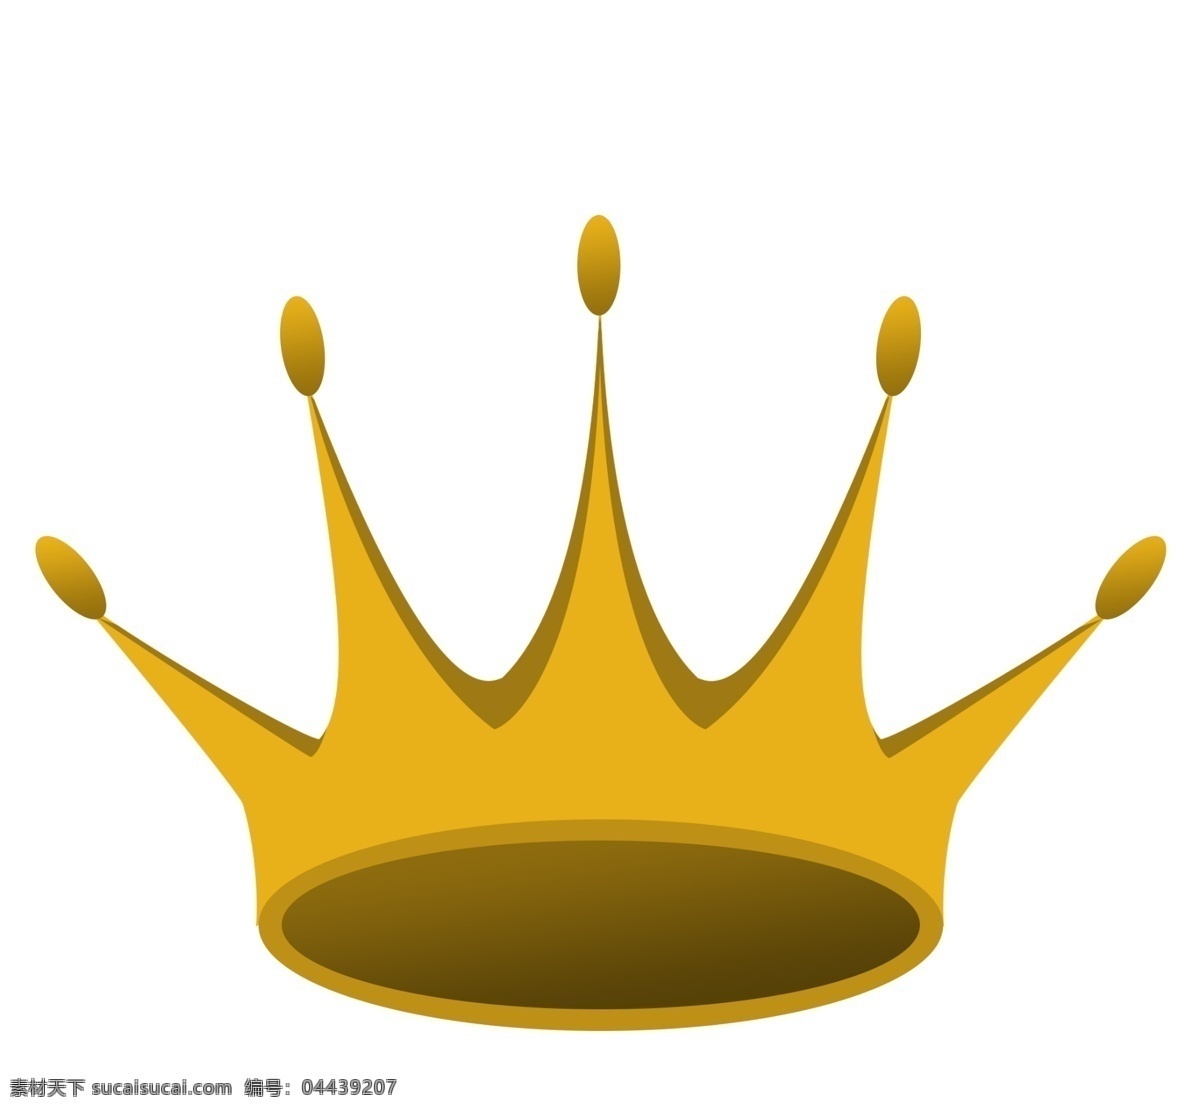 皇冠 手绘 王冠 金色 金色皇冠 金子 金属材质 王国 高贵 皇家 帽子 国王 king